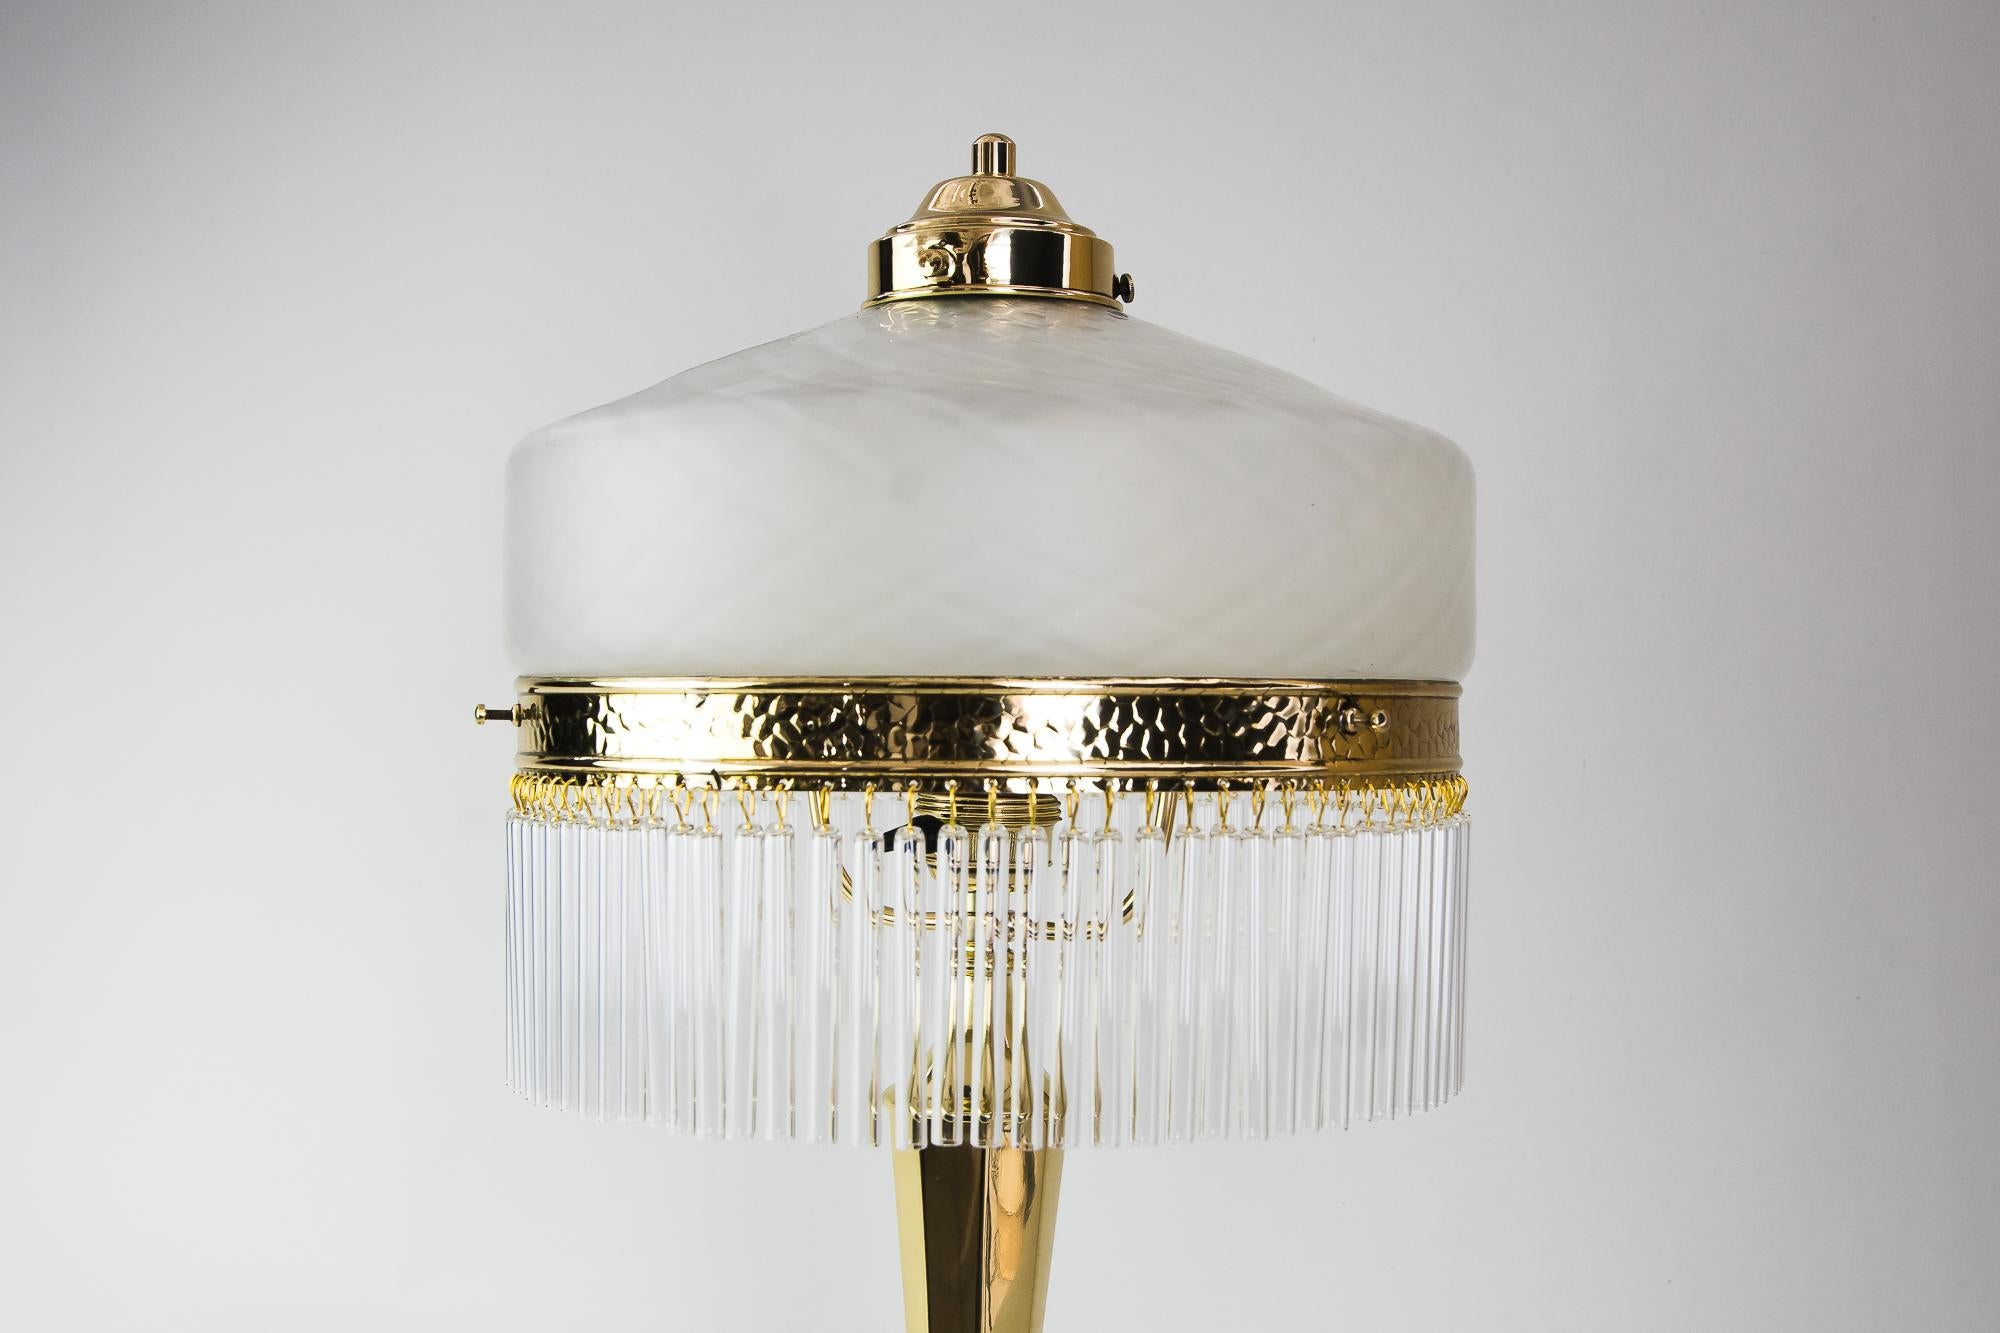 Lampe de table Art déco, vers 1920
Polis et émaillés au four
Abat-jour original en verre opale
Les bâtons de verre sont remplacés (neufs).